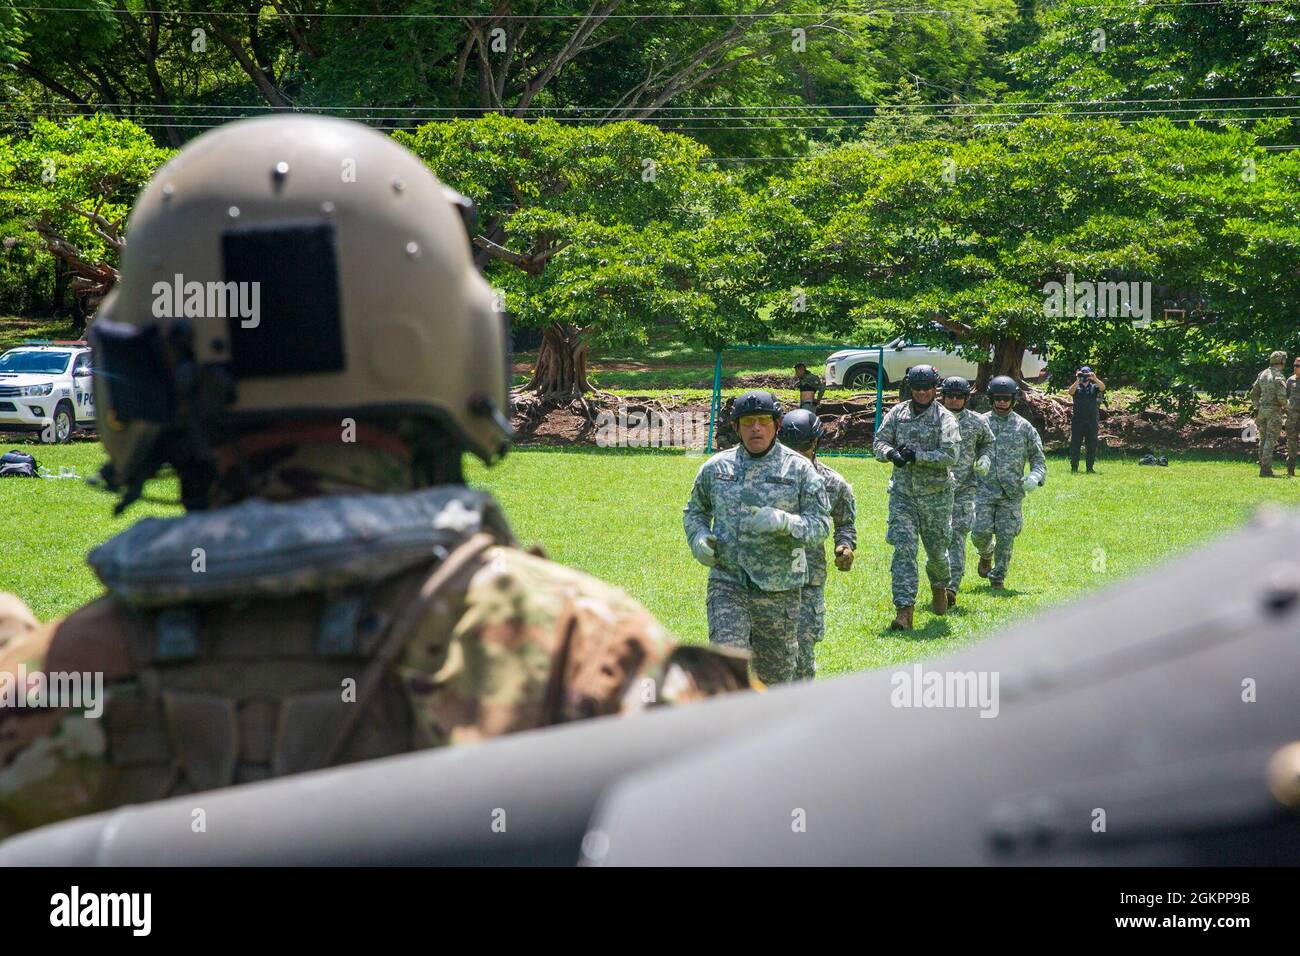 Polizisten mit den costaricanischen Polizeikräften laufen während des Fast-Rope Insertion and Extraction System (FRIES) Trainings in Liberia, Costa Rica, auf einen Hubschrauber der US-Armee UH-60 Blackhawk, der dem 1. Bataillon, 228. Aviation Regiment, Joint Task Force-Bravo, Soto Cano Air Base, Honduras, zugewiesen wurde, 15. Juni 2021. Ziel der Übung war es, die Interoperabilität mit den Partnerländern zu verbessern, Erfahrungen mit verschiedenen Ausbildungsmöglichkeiten zu sammeln und die Beziehungen zu den costaricanischen Polizeikräften zu stärken. Stockfoto